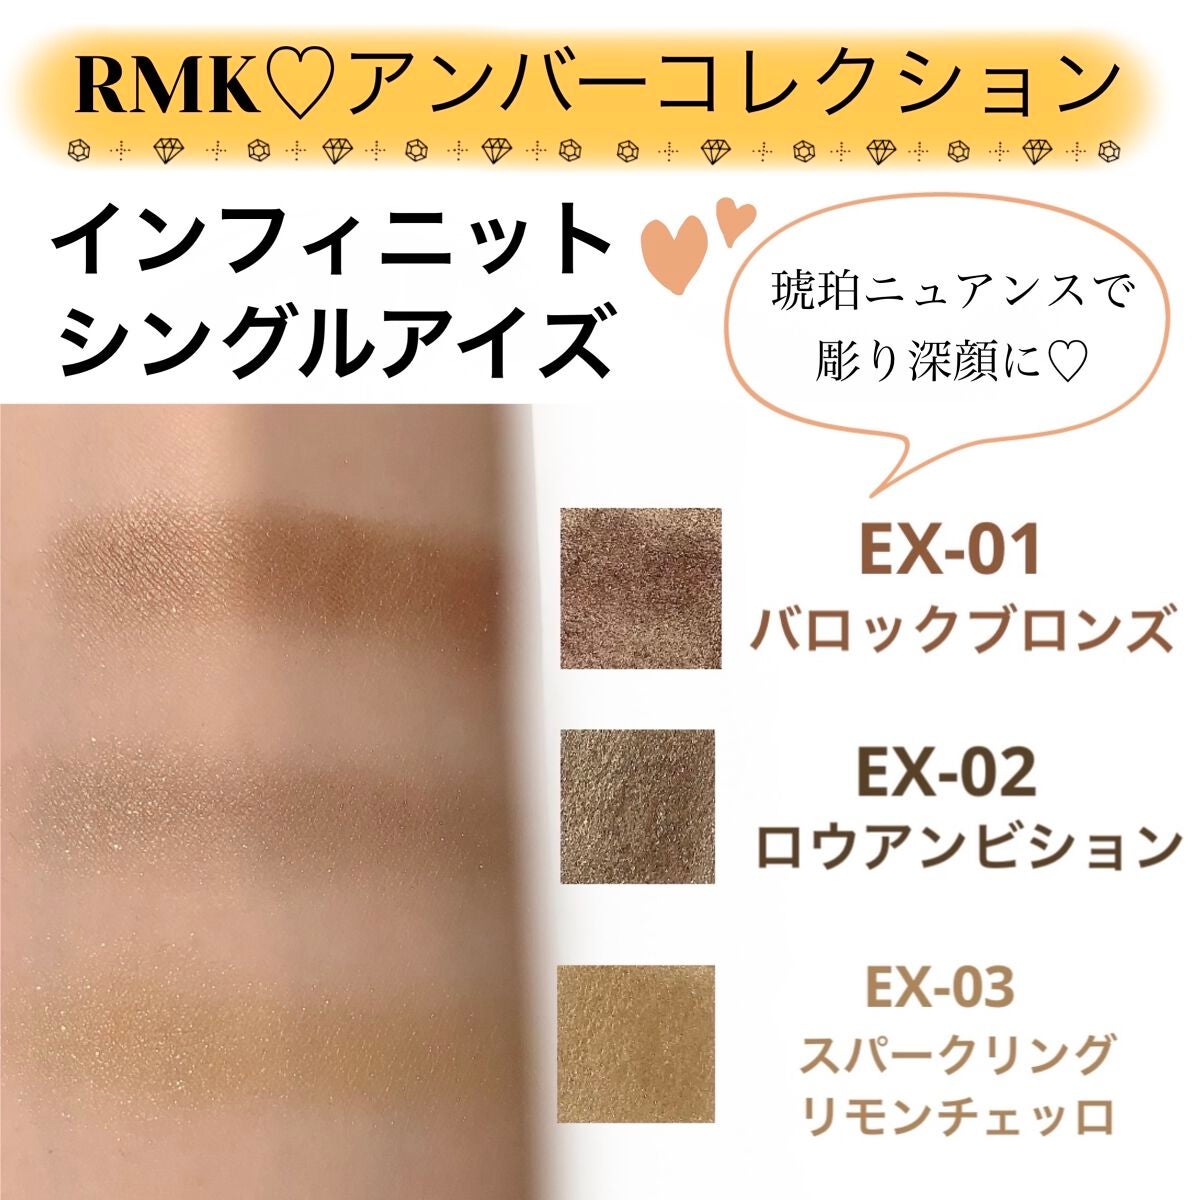 RMK インフィニットシングルアイズ EX-03 - アイシャドウ